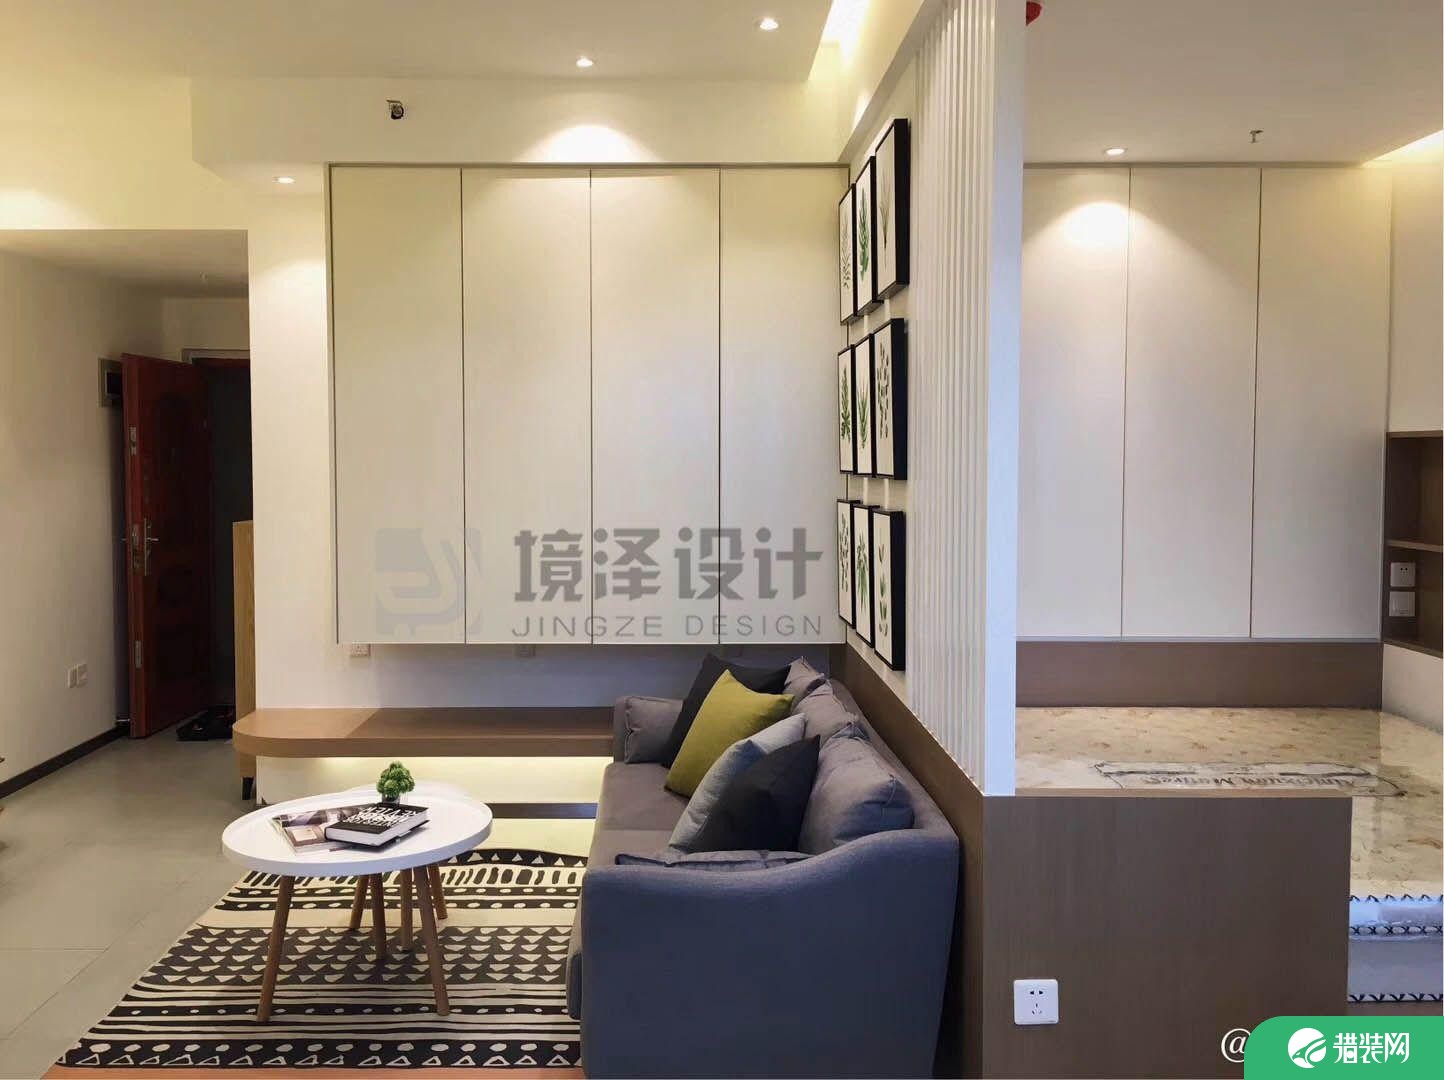 晋江宝龙单身公寓装修效果图，充满轻奢气息的时尚小屋